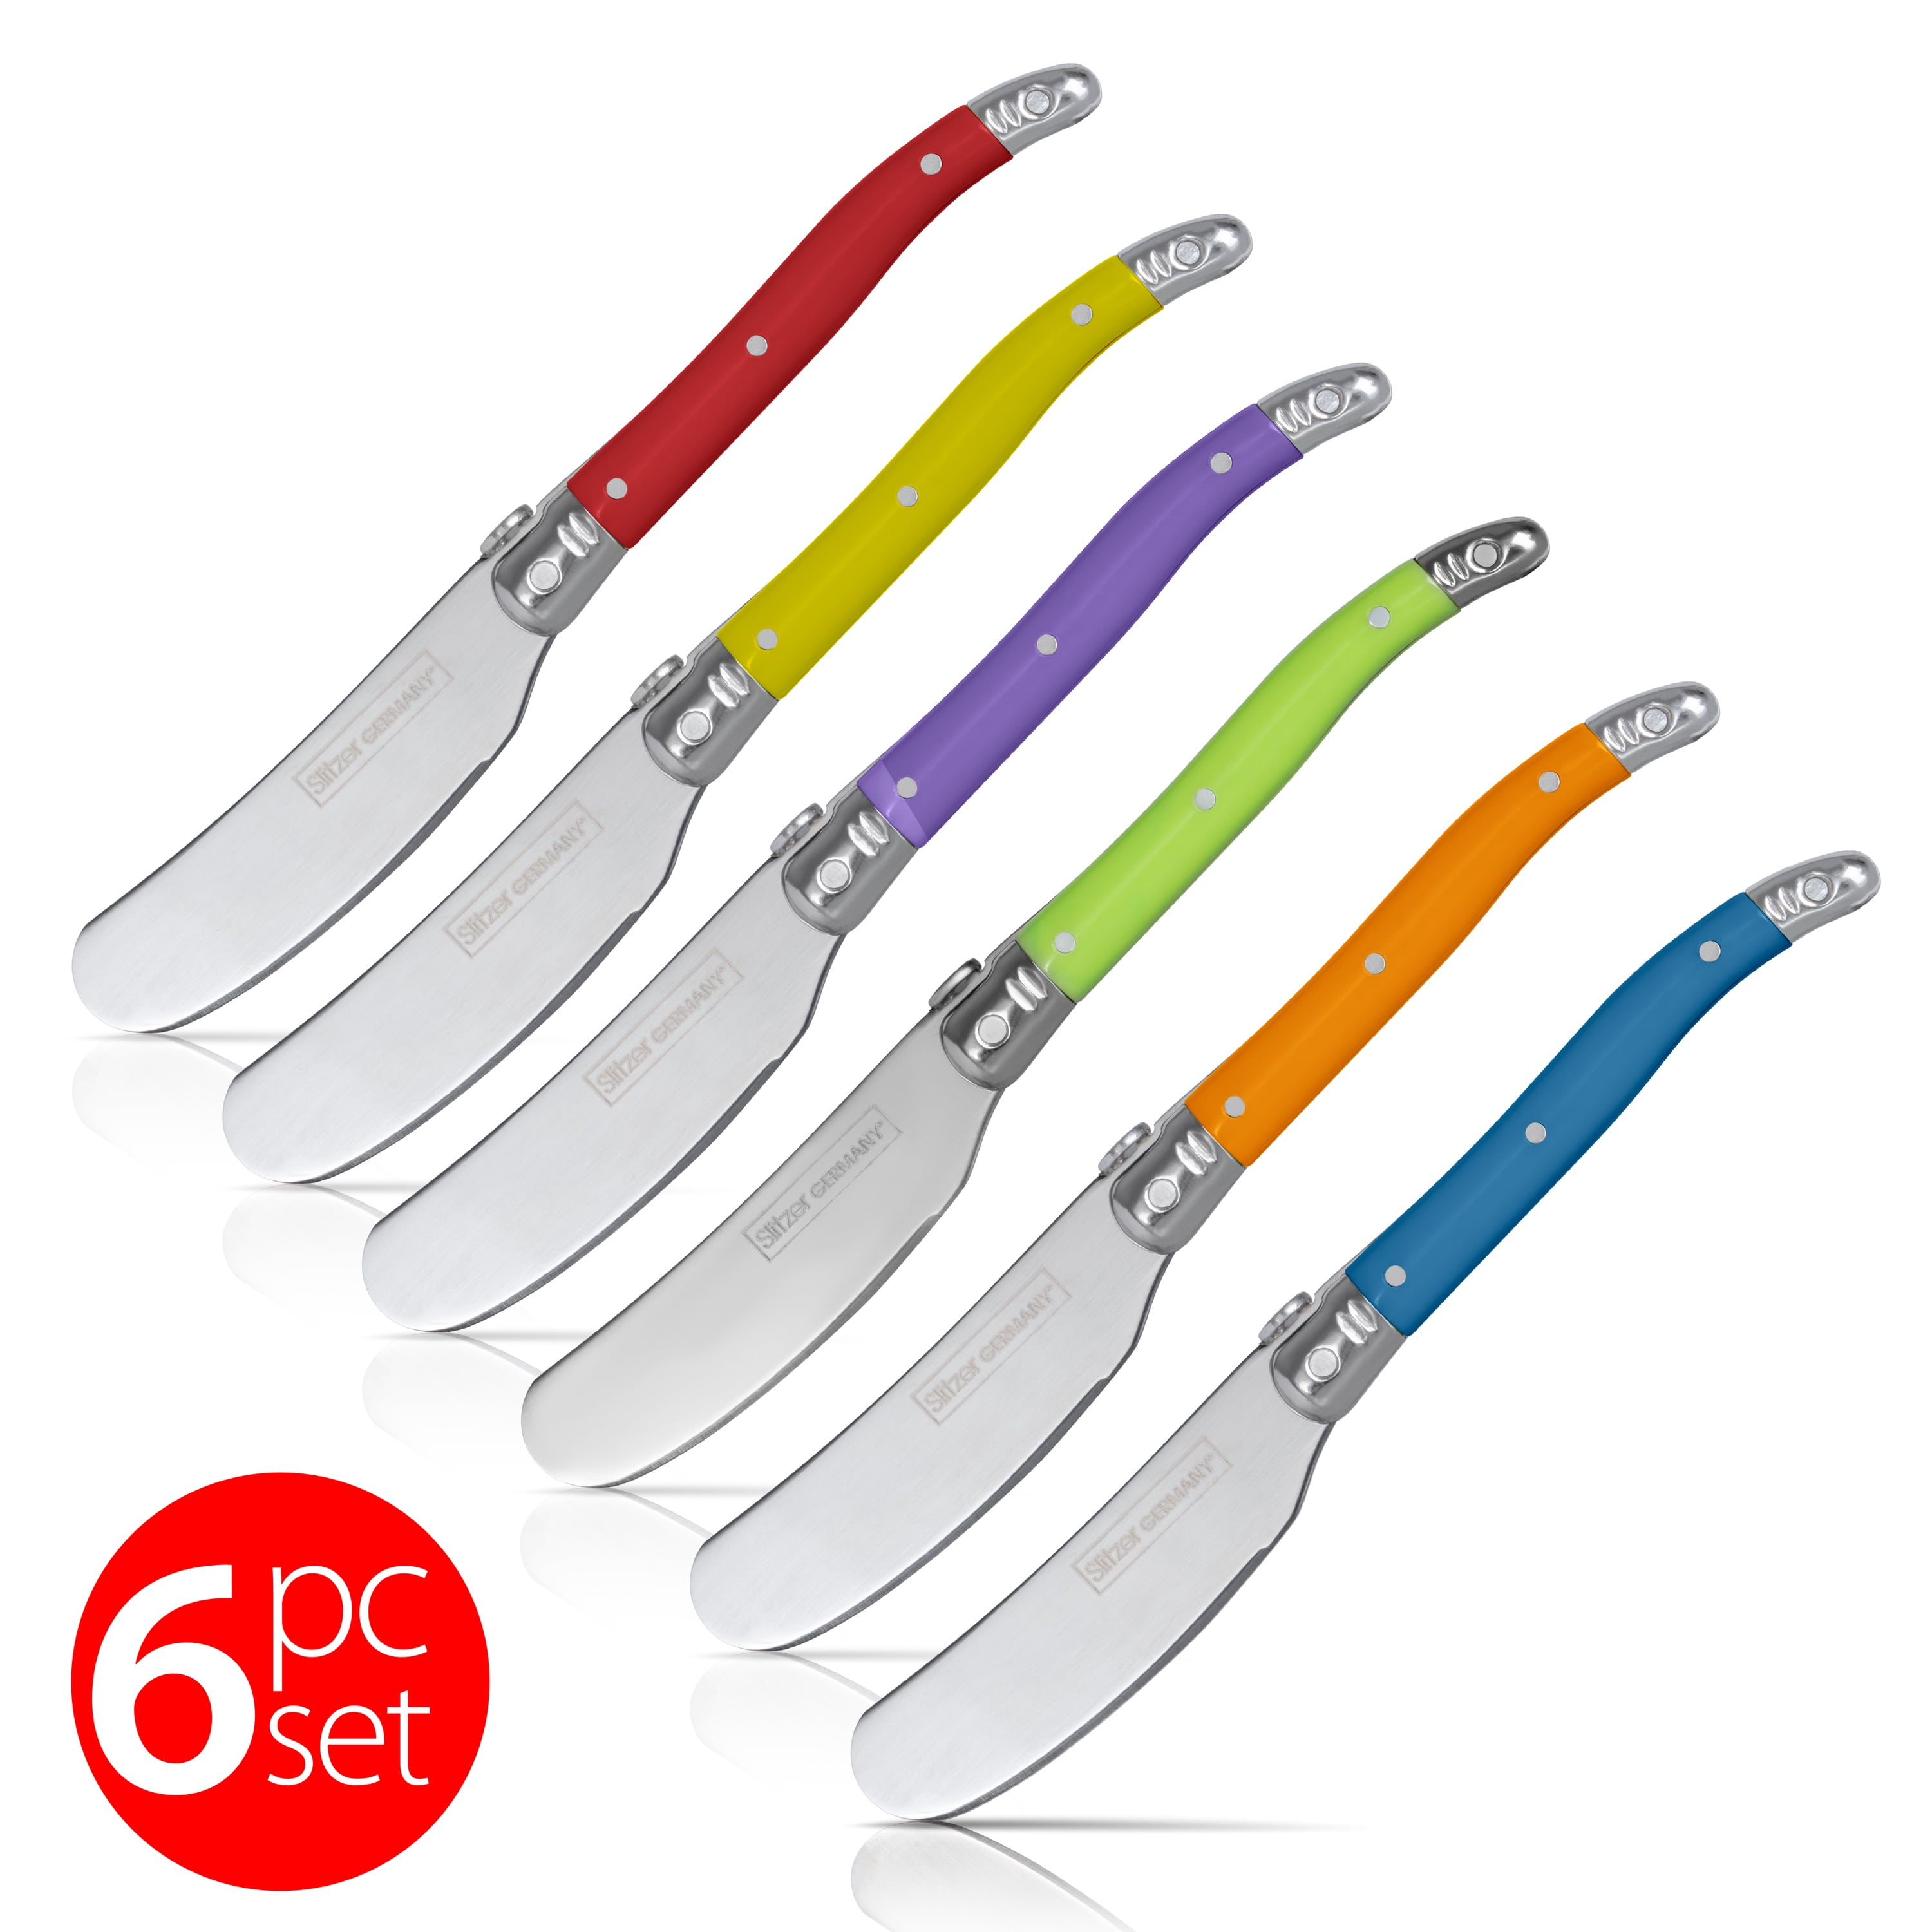 SLITZER 6 Piece Professional German Cutlery Kitchen Knife Set in Case  Retail $90